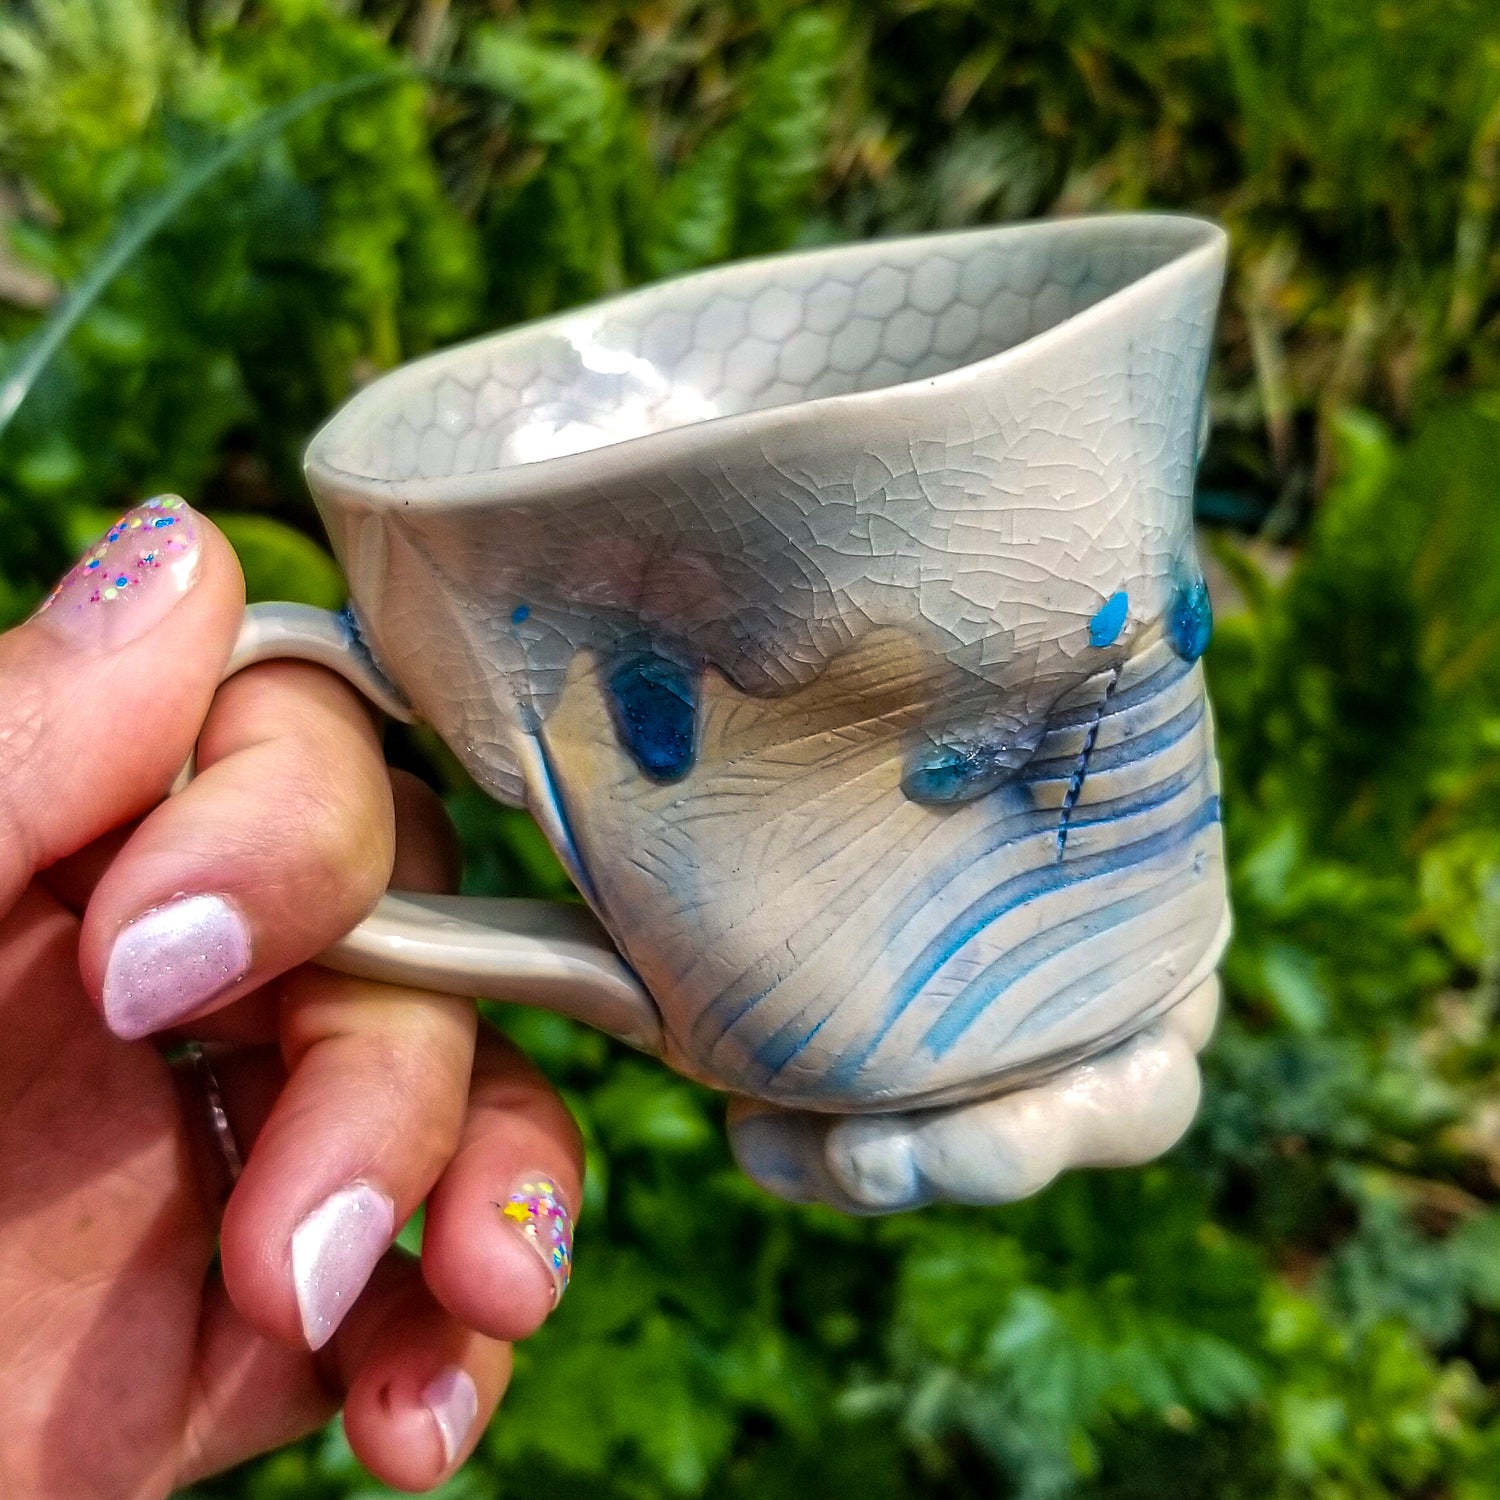 Handmade stoneware ceramic mug blue color with pressed textures